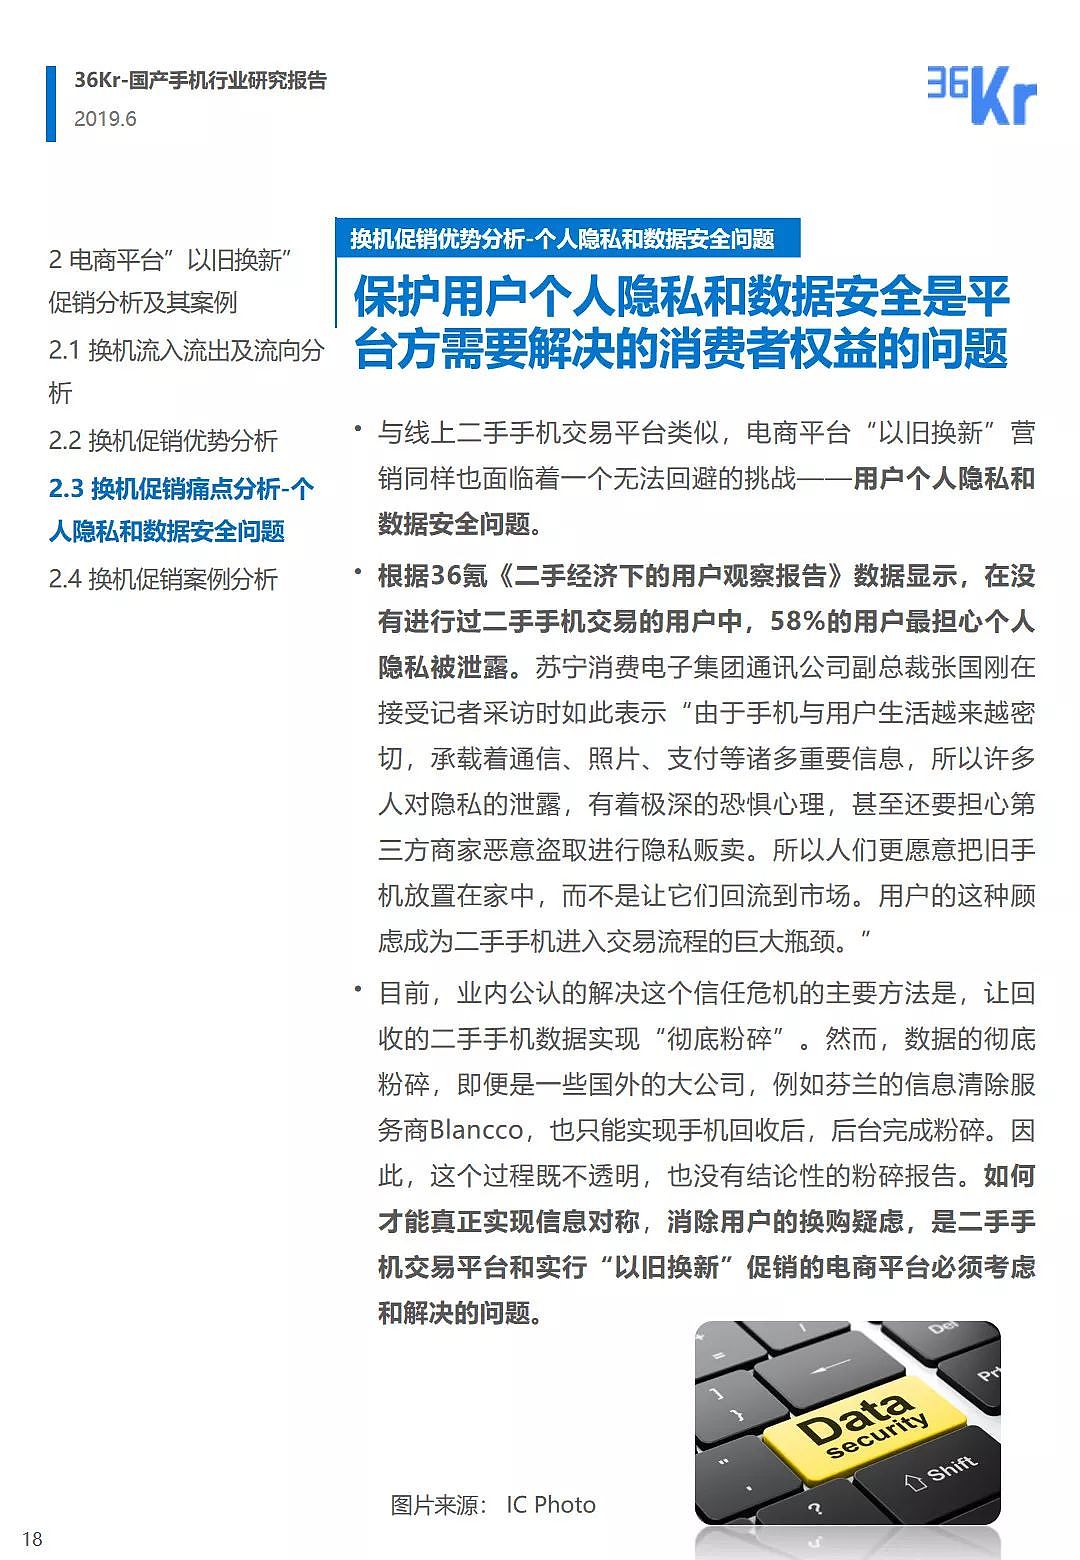 中国手机品牌市场营销研究报告 | 36氪研究 - 19